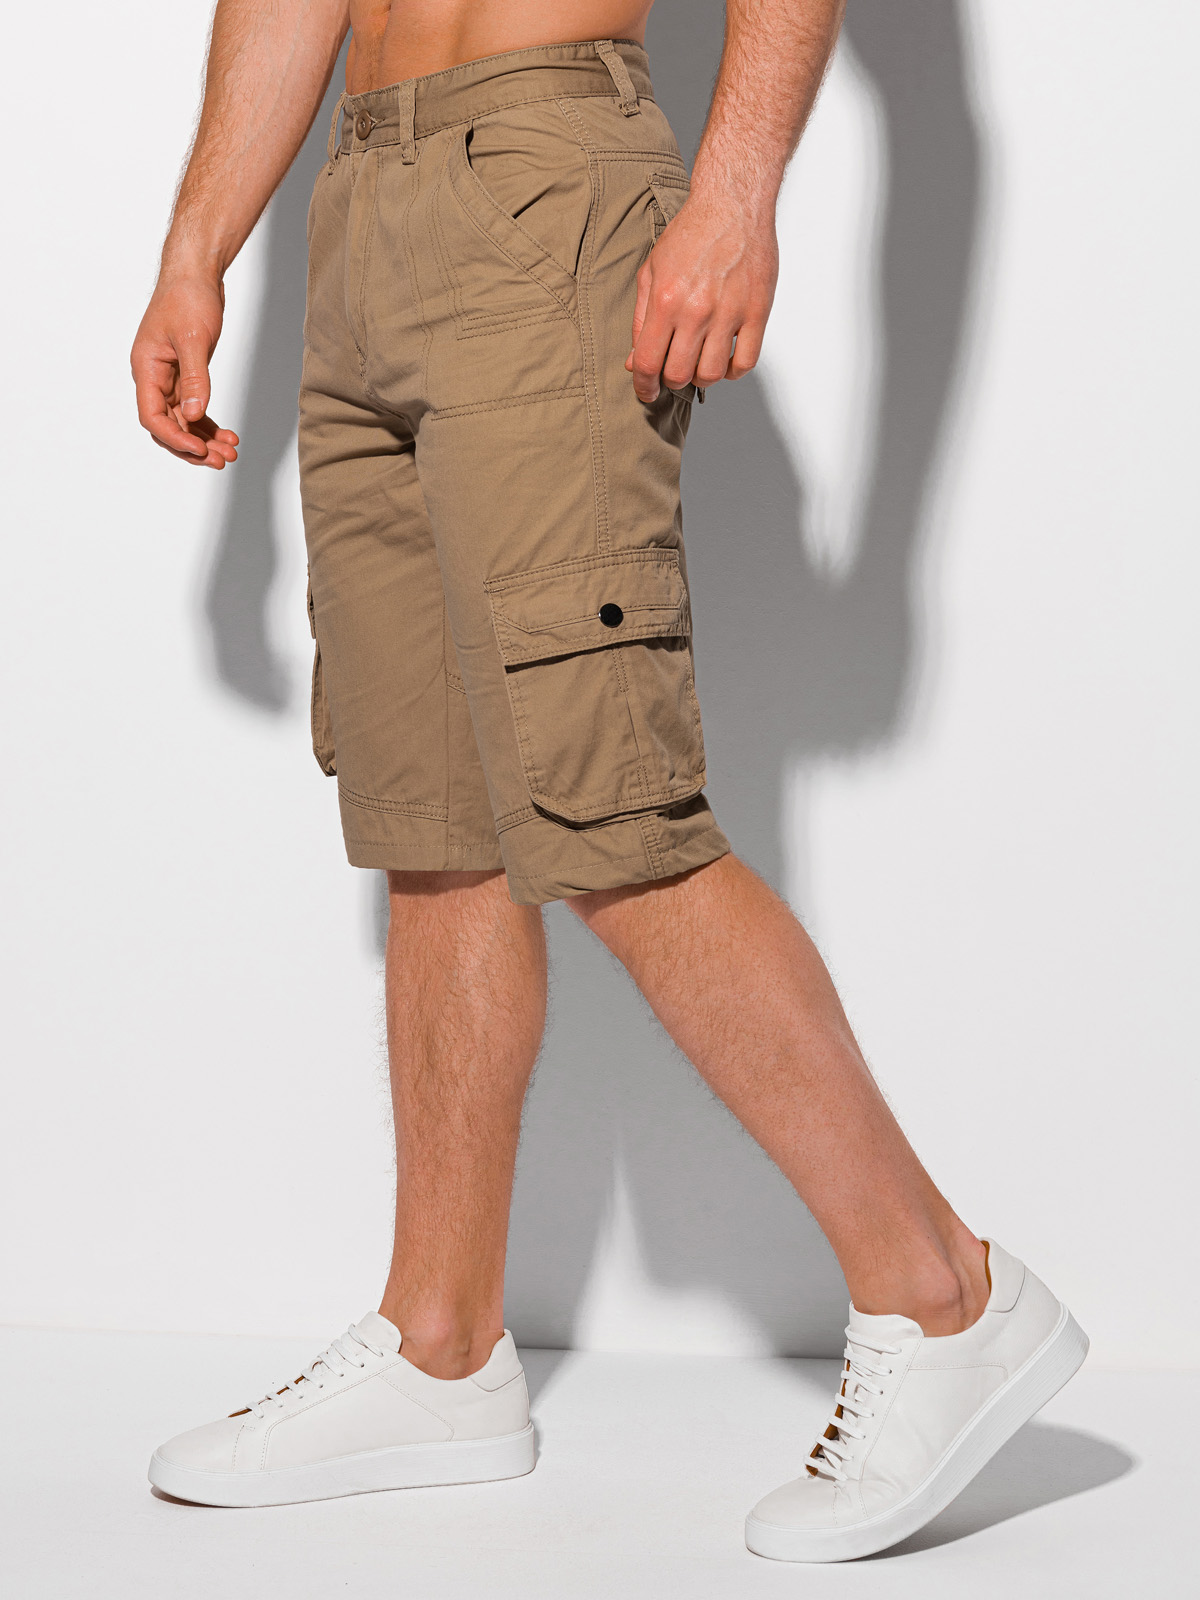 Vertrek naar tussen Toepassing Men's cargo shorts W373 - camel | MODONE wholesale - Clothing For Men